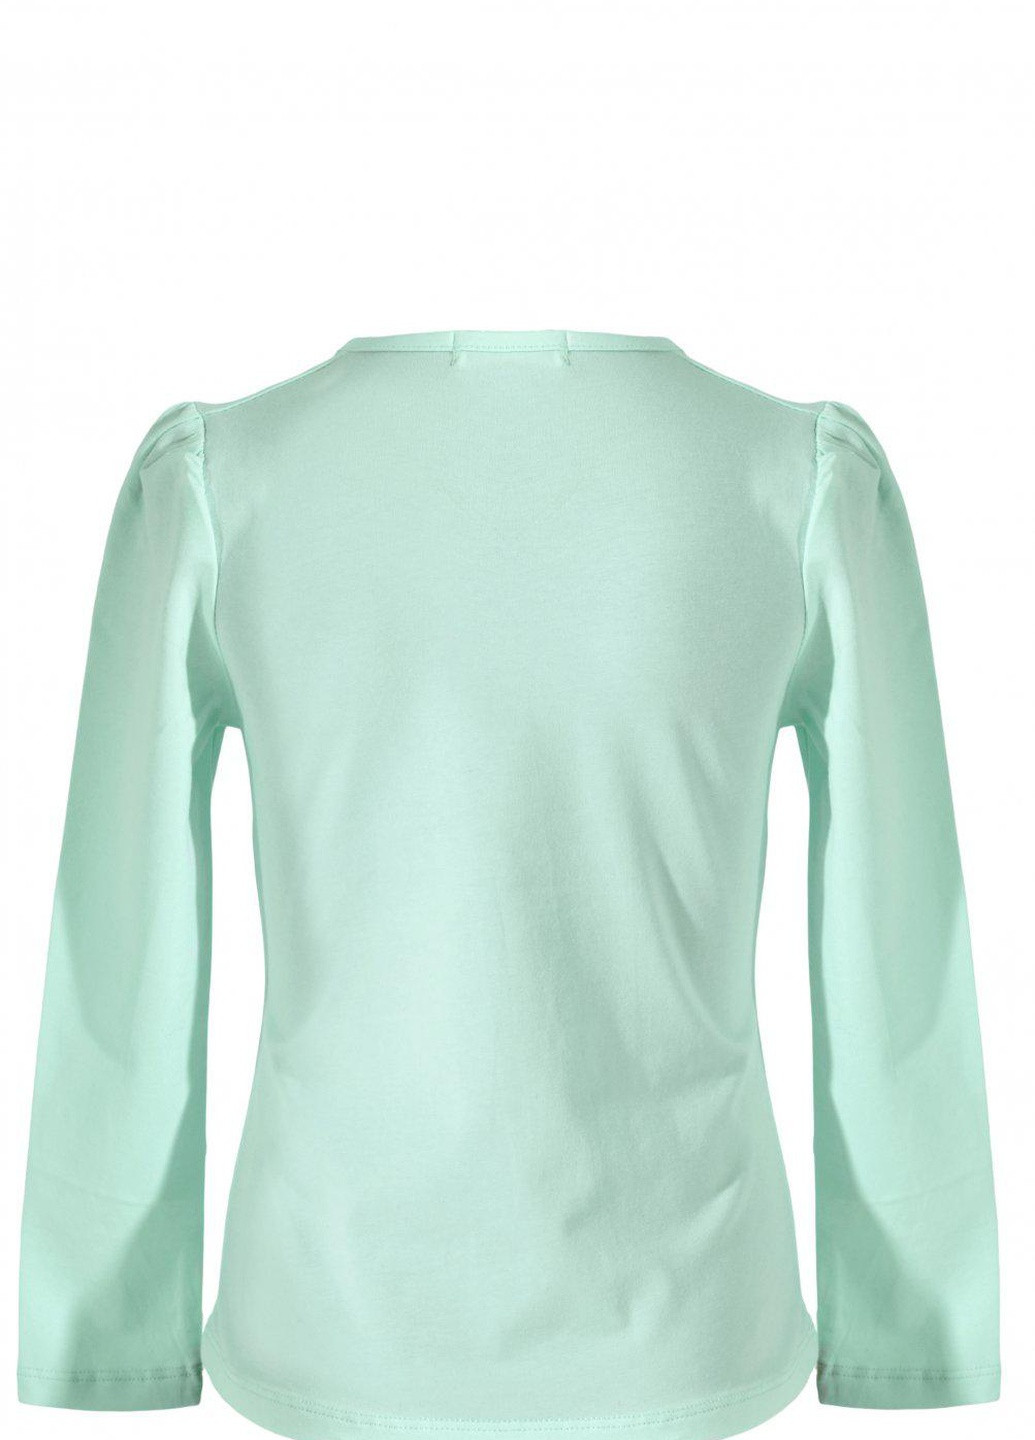 Зеленая футболки батник дівчинка (w019-143) Lemanta